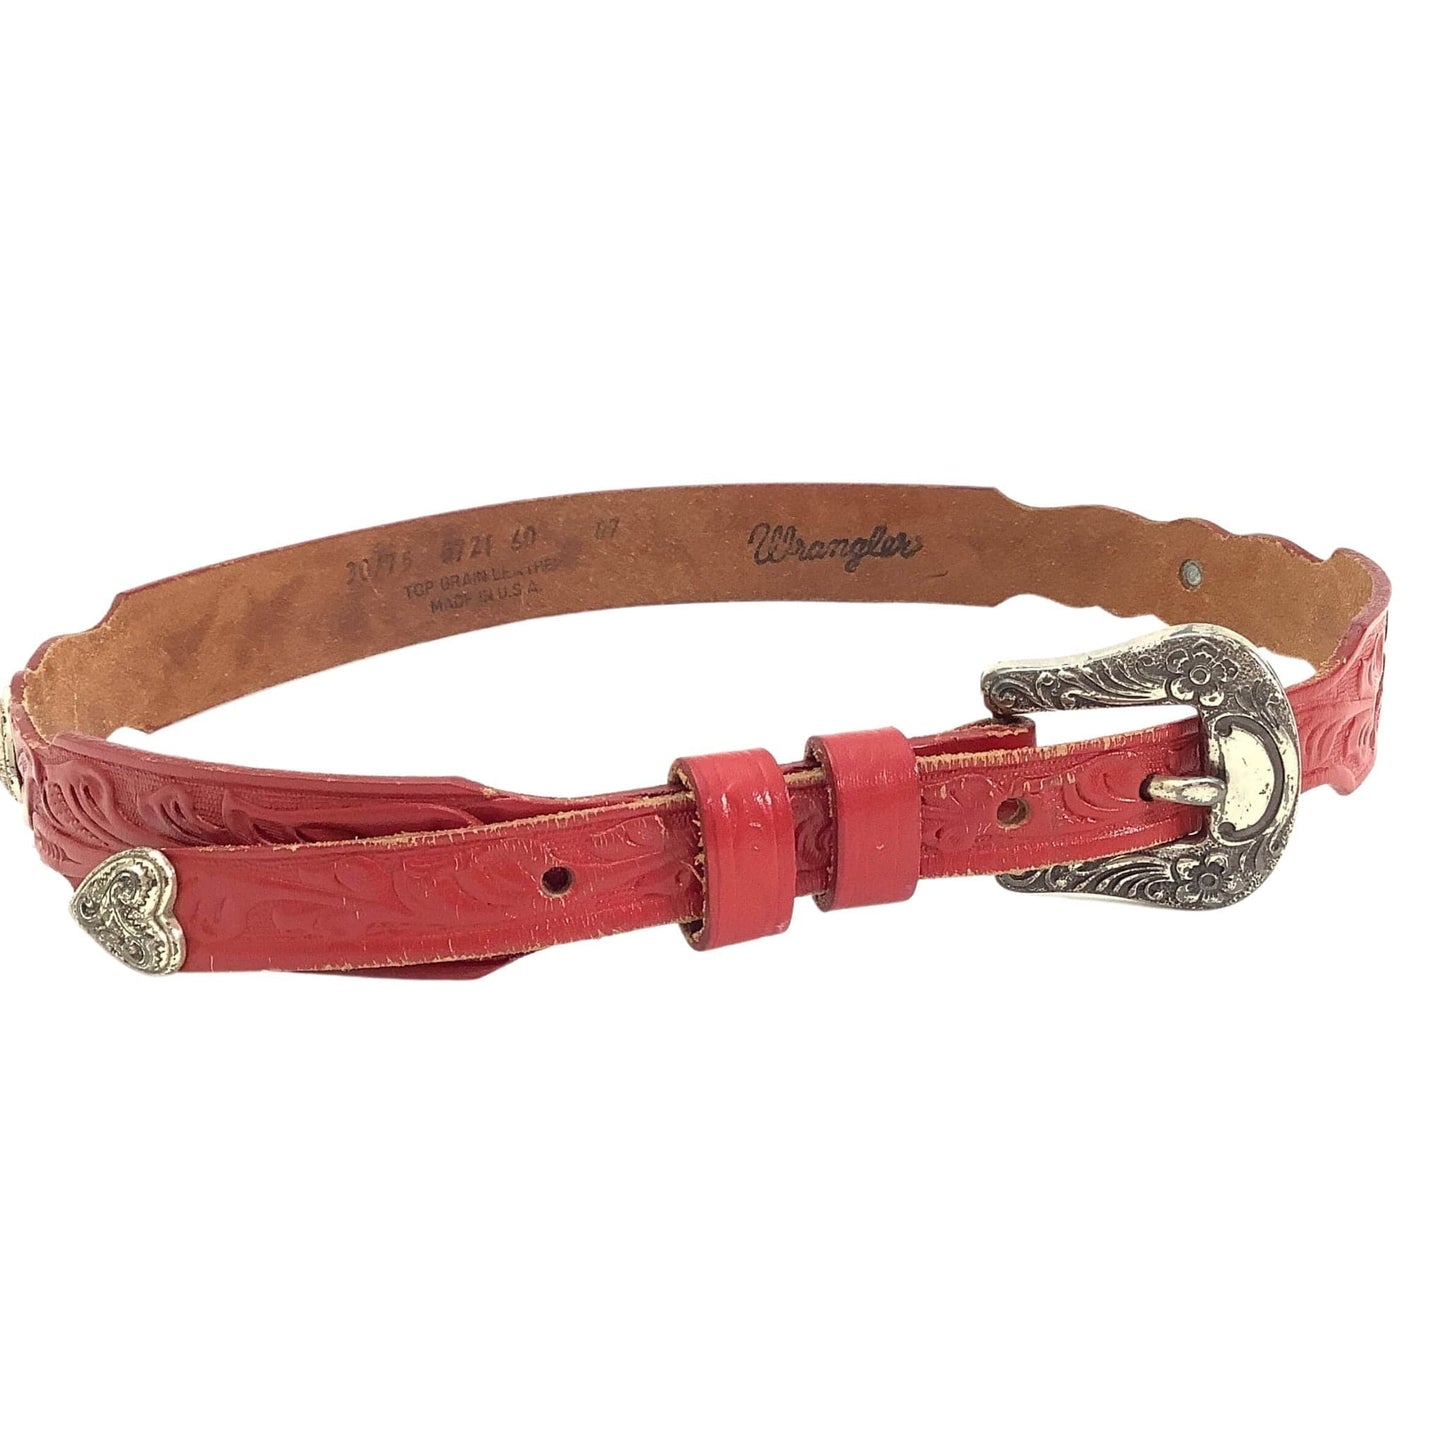 Vintage Wrangler Red Belt Small / Red / Vintage 1980s